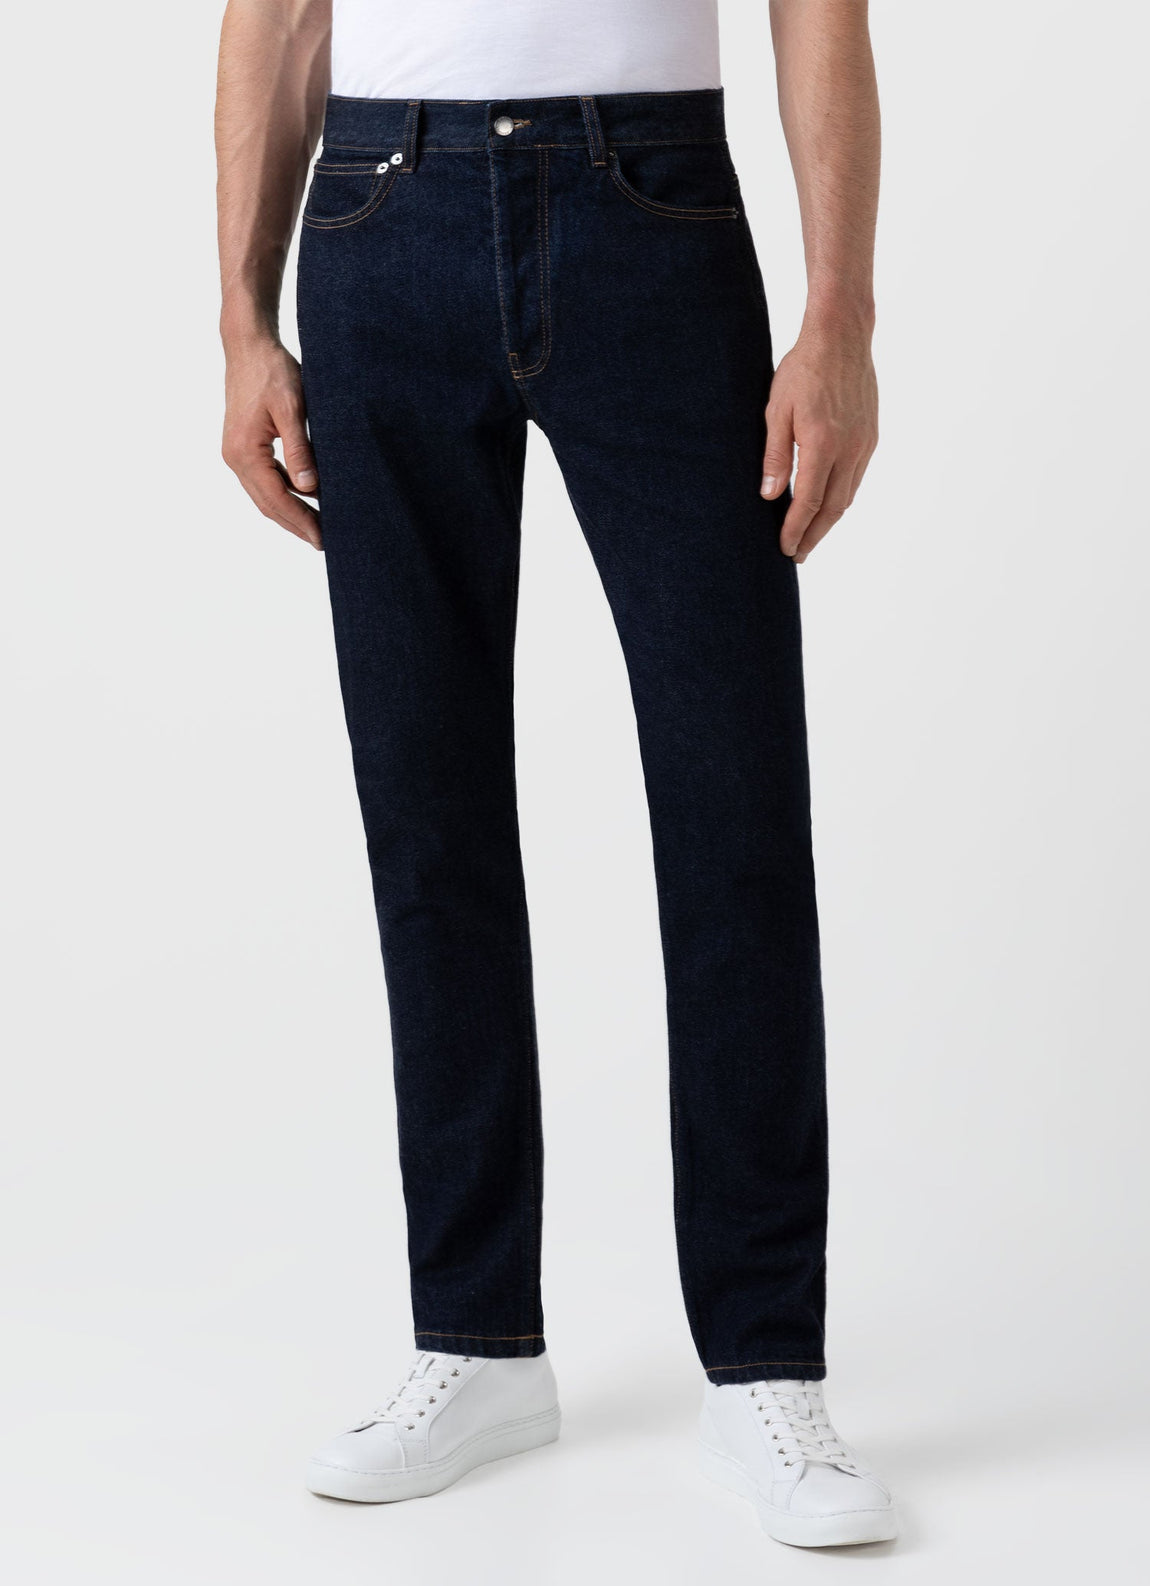 Pantalon Jeans classique pour homme avec teinture rayée sur les poches